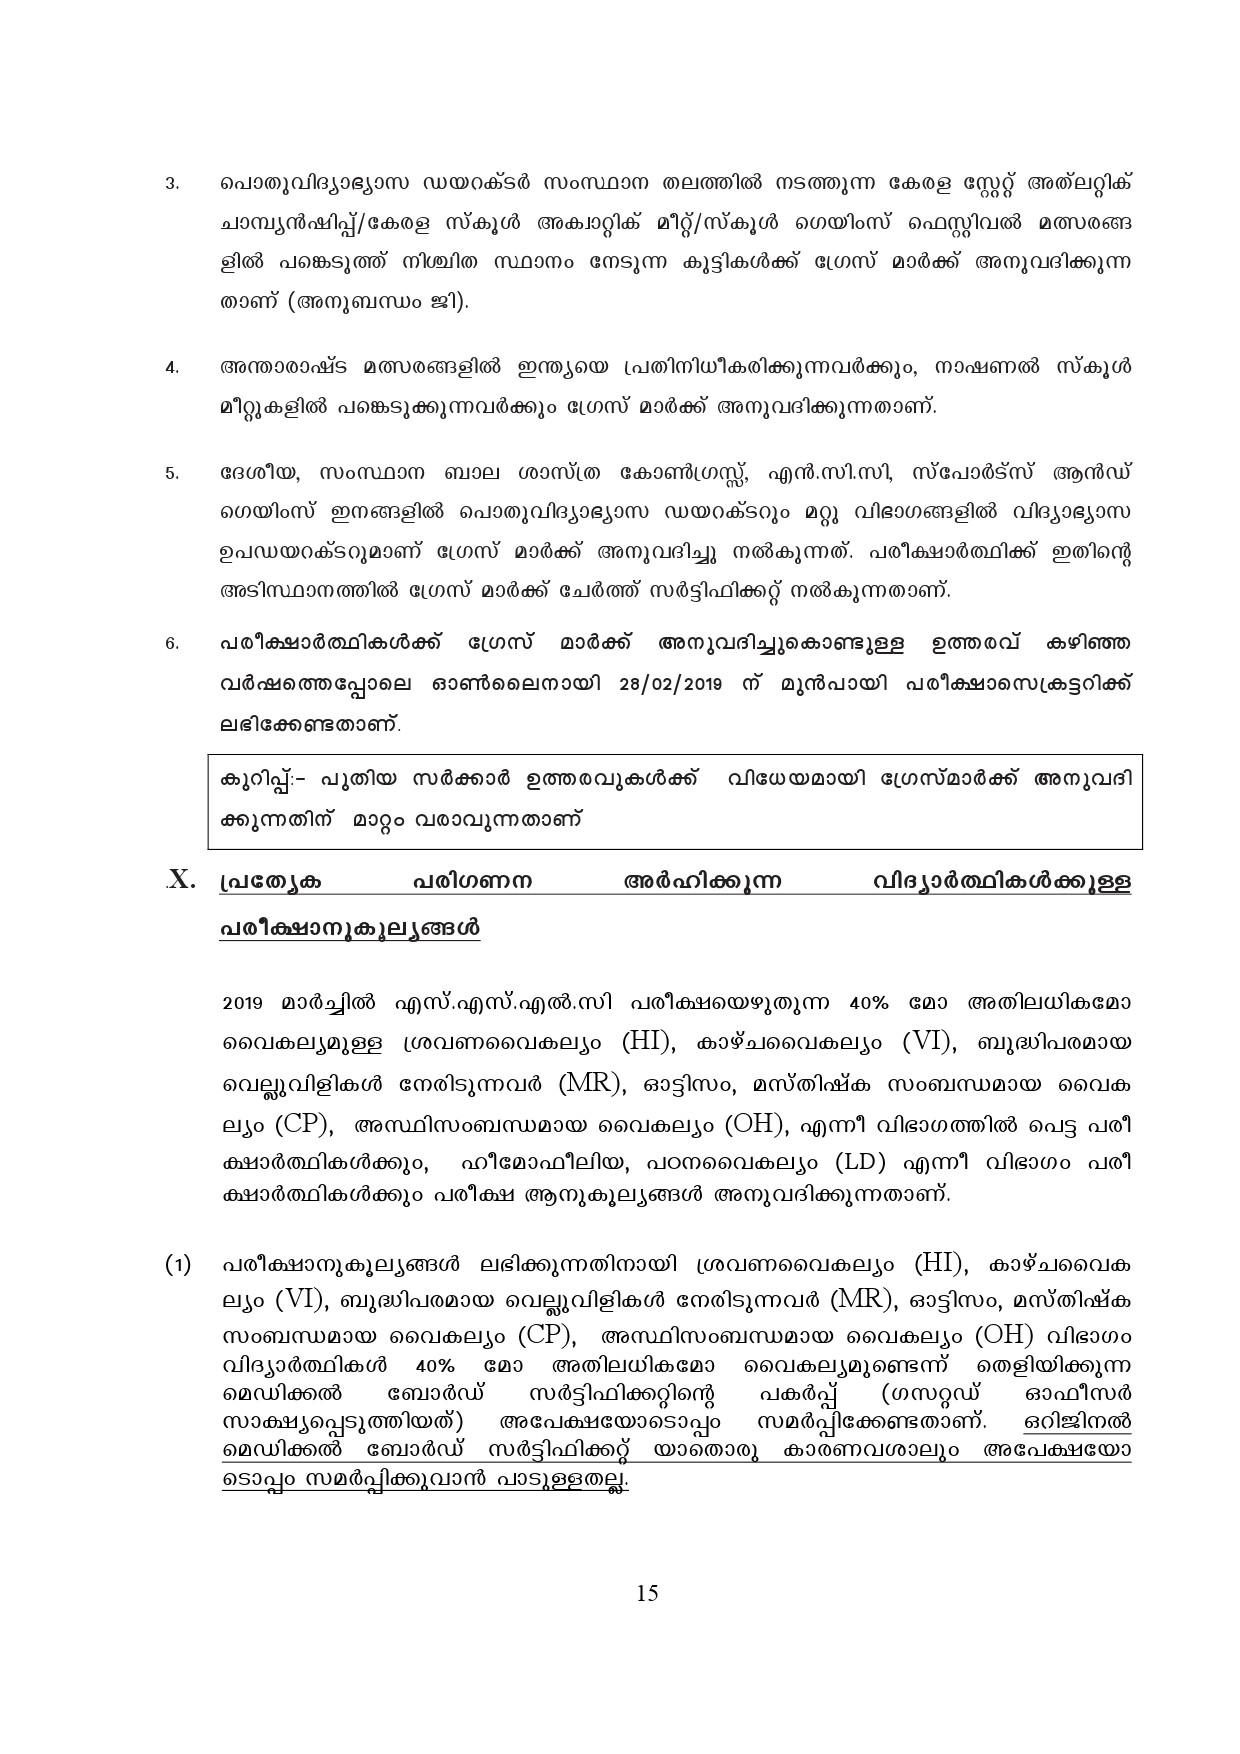 Kerala SSLC Exam Result 2019 - Notification Image 15